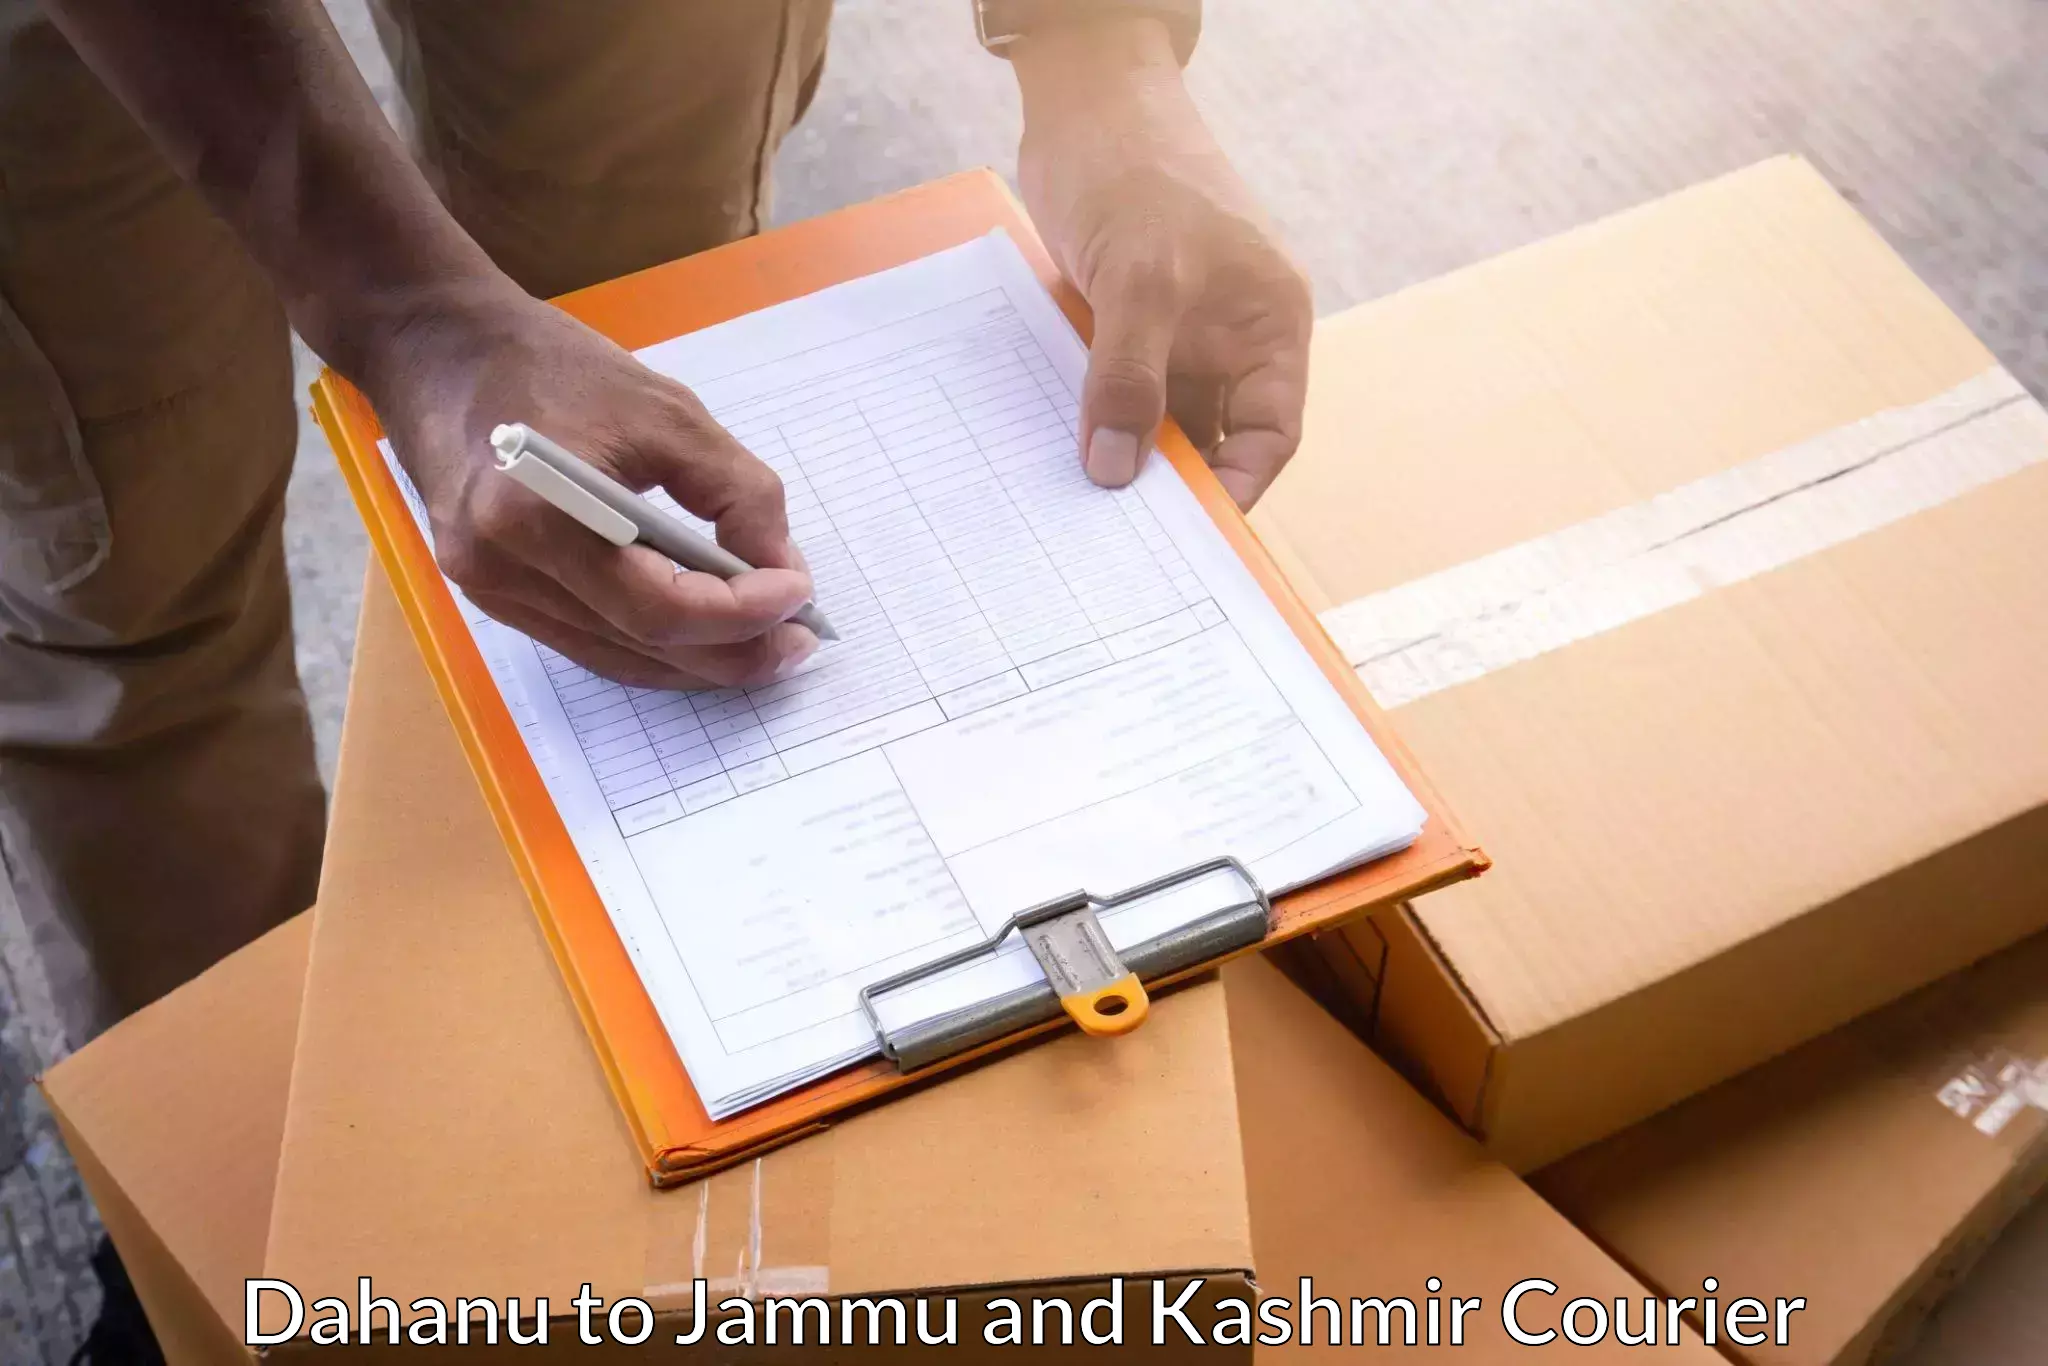 Quick dispatch service Dahanu to University of Jammu